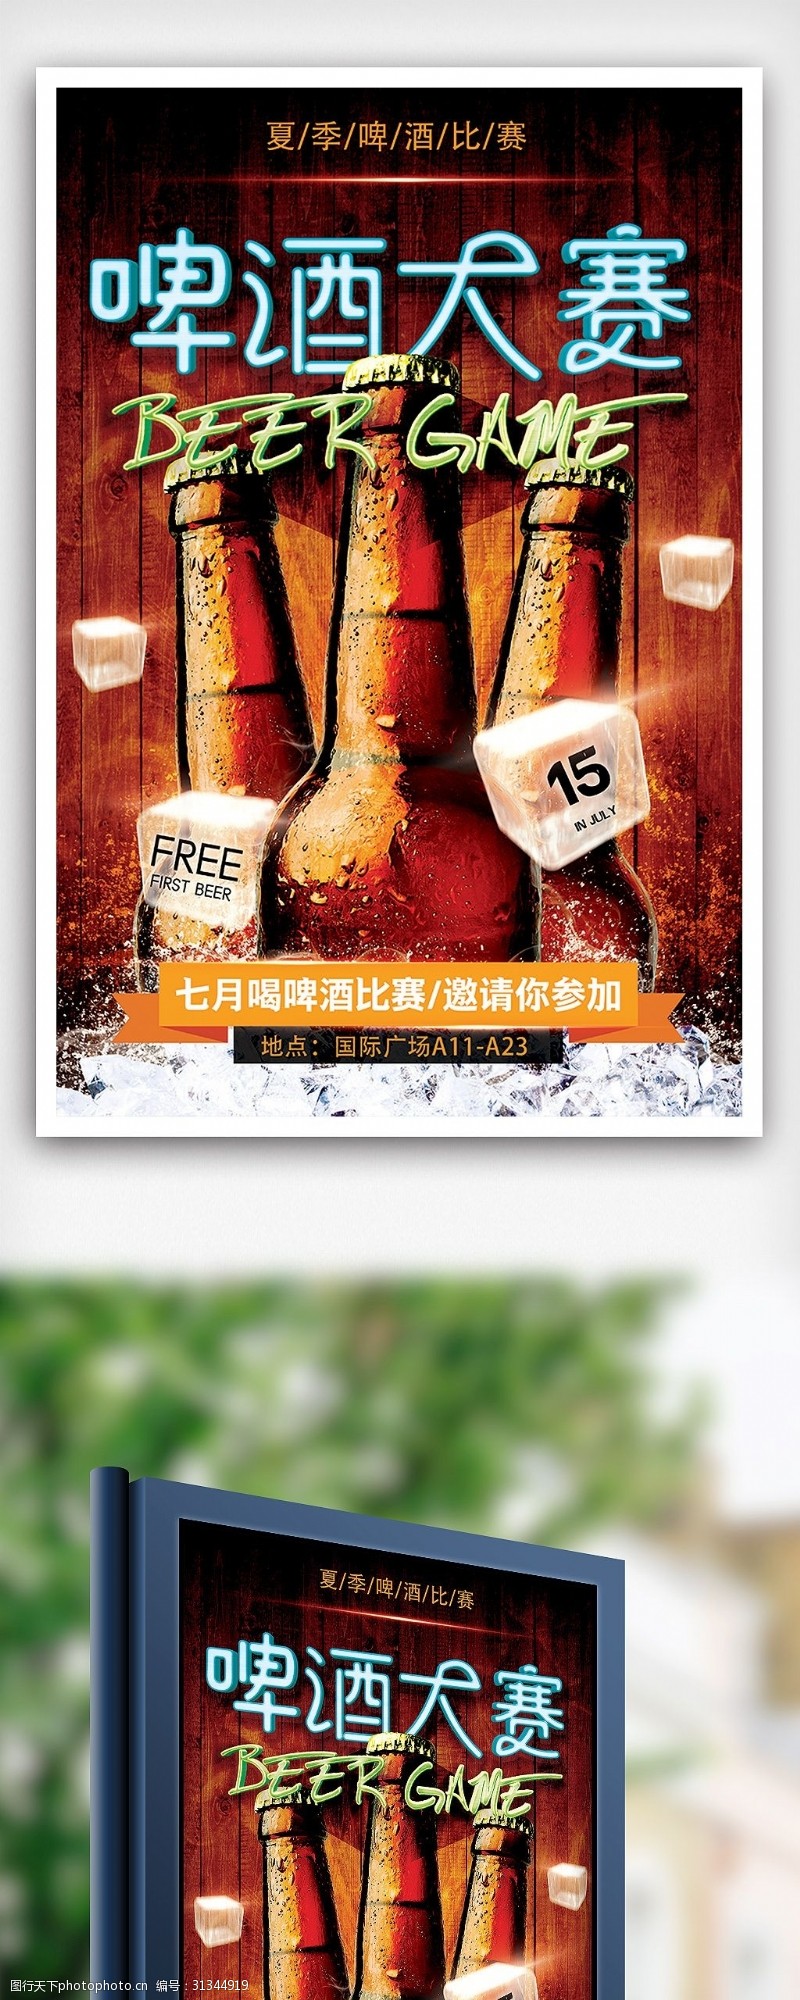 啤酒免费下载啤酒大赛喝啤酒比赛海报设计模板